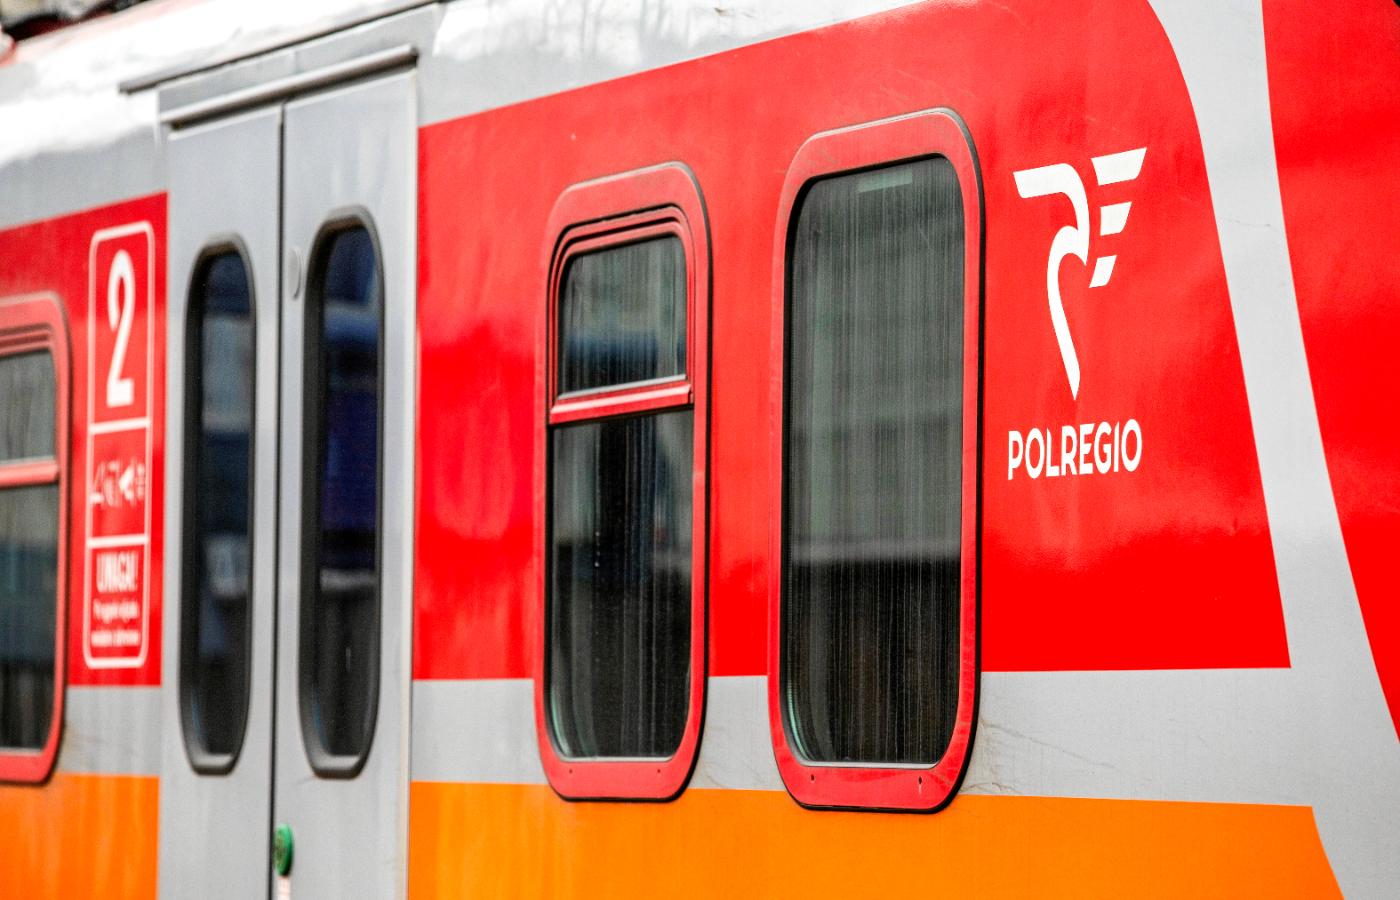 Formalnie strajk w Polregio ma się rozpocząć 16 maja – wówczas staną prawdopodobnie wszystkie lub prawie wszystkie pociągi spółki. Ale utrudnienia są już teraz.